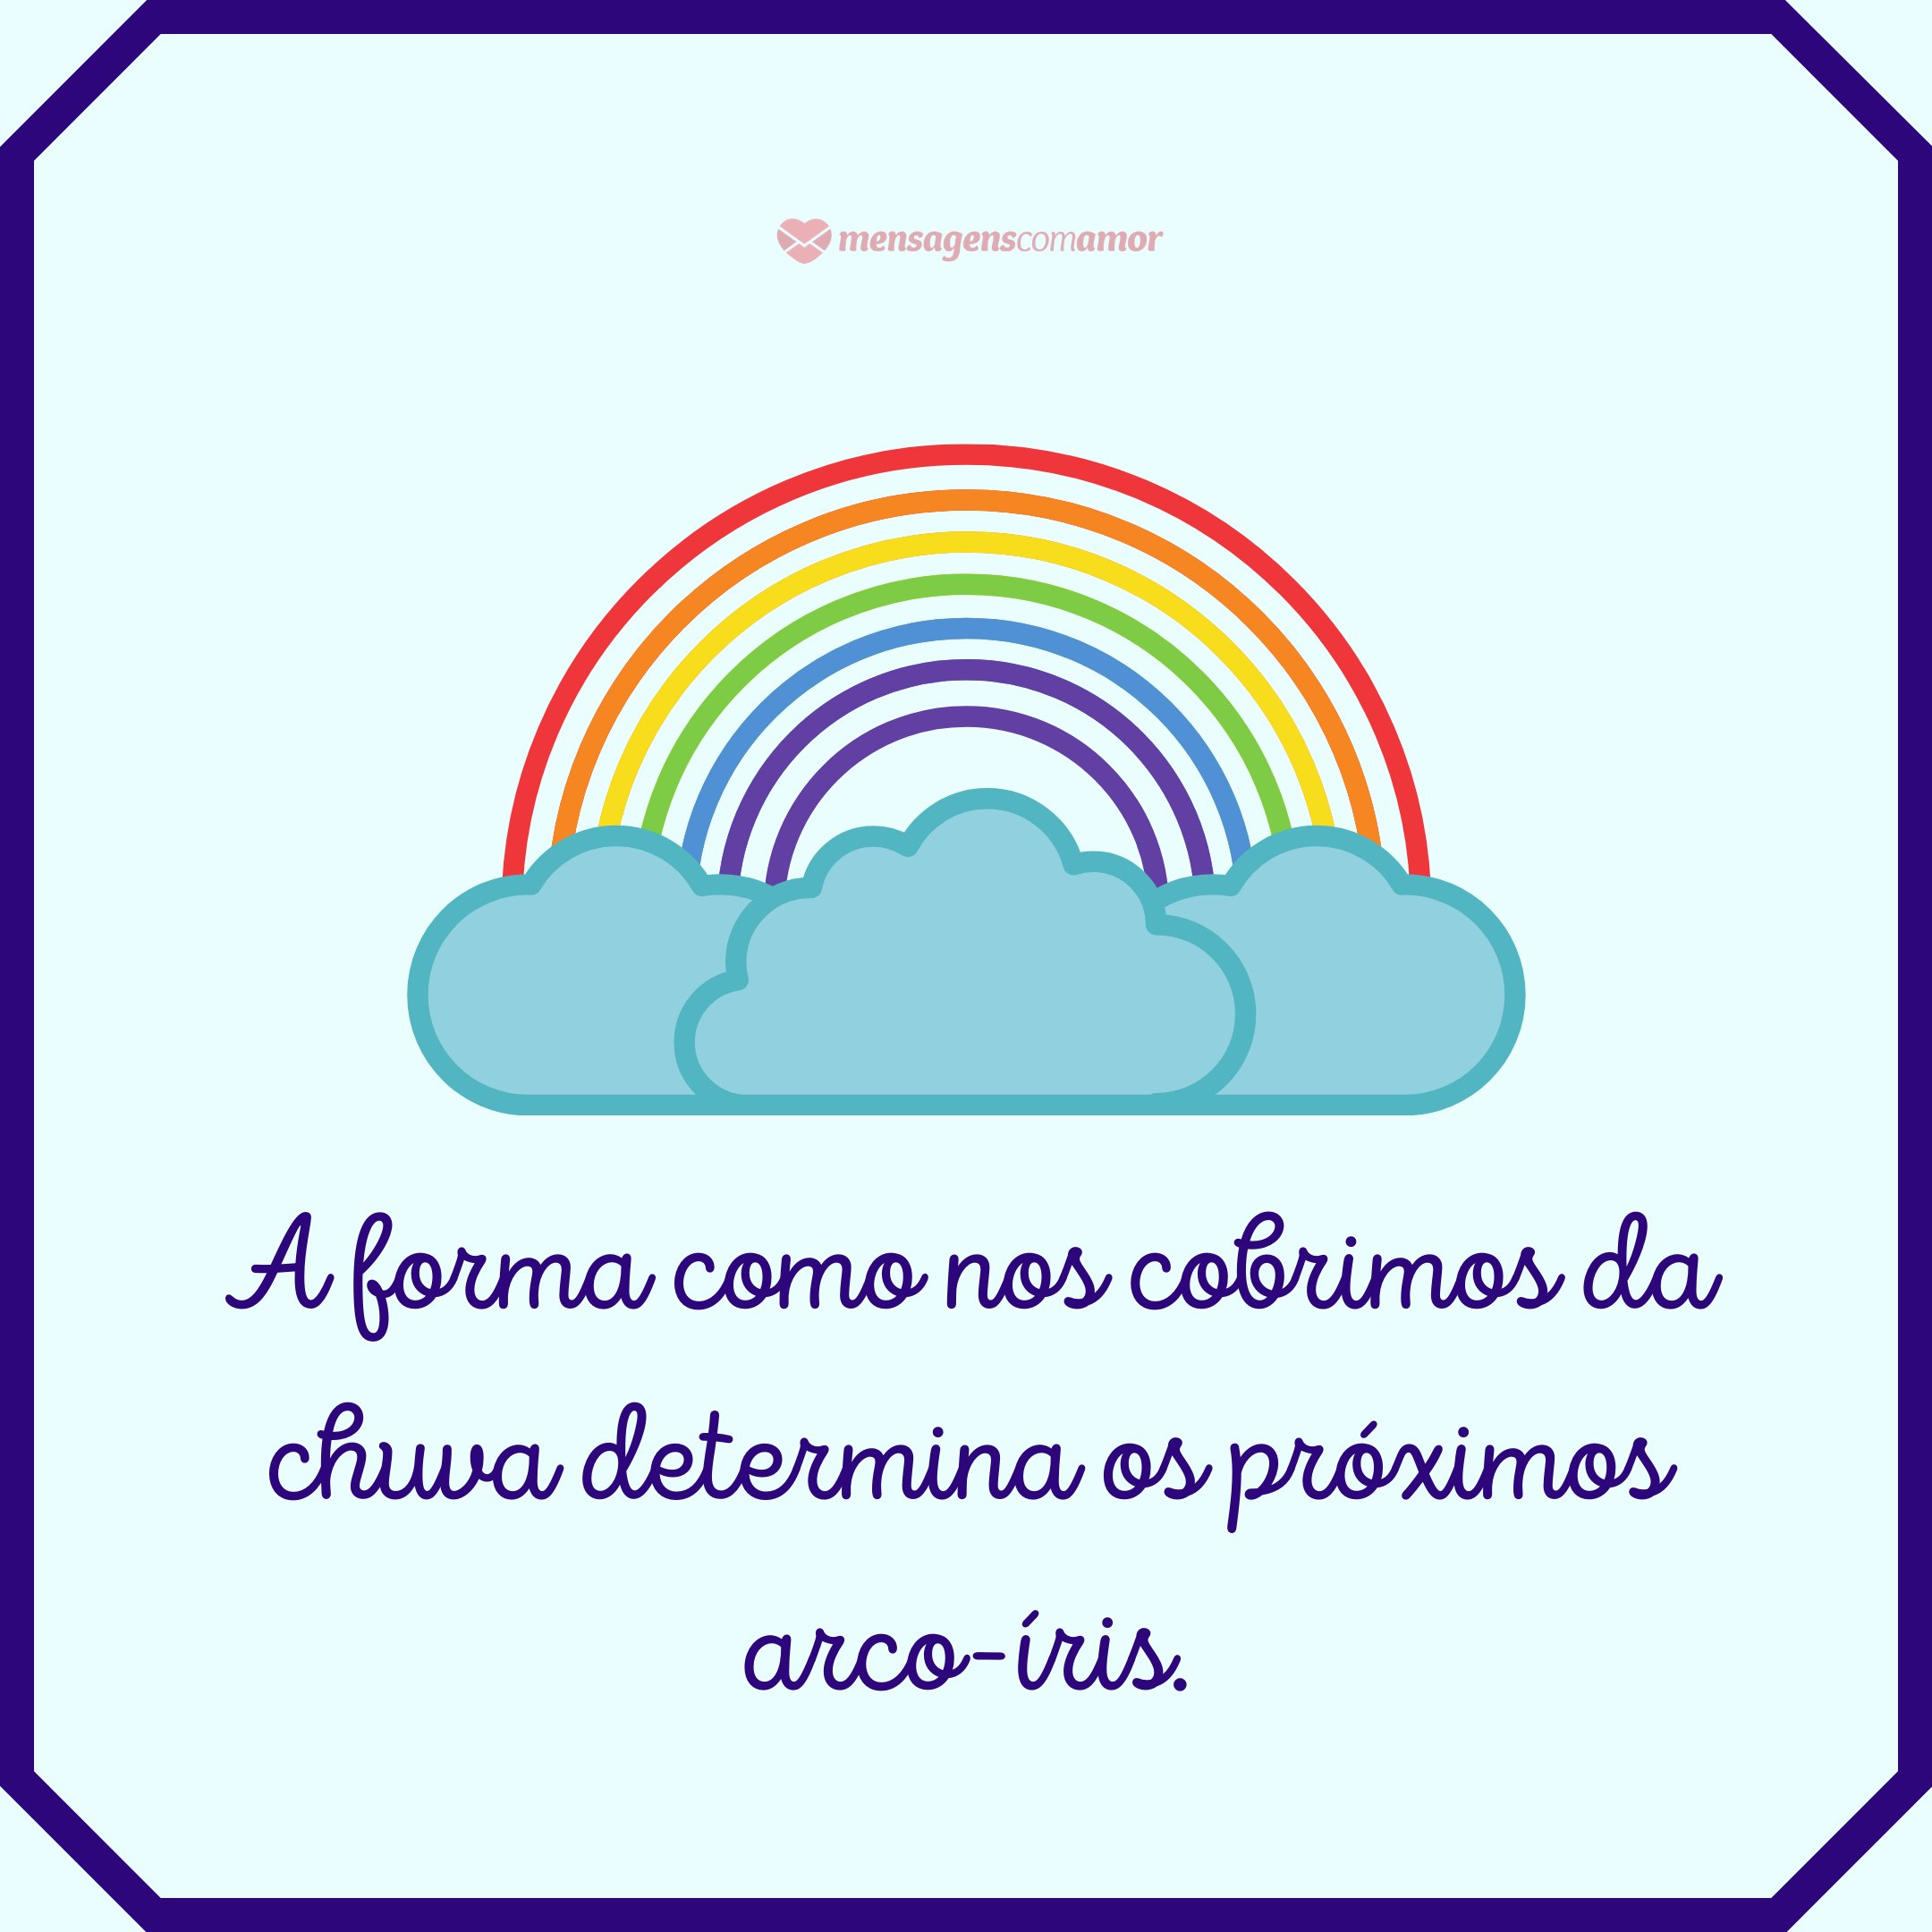 'A forma como nos cobrimos da chuva determina os próximos arco-íris.' - Frases do Dia